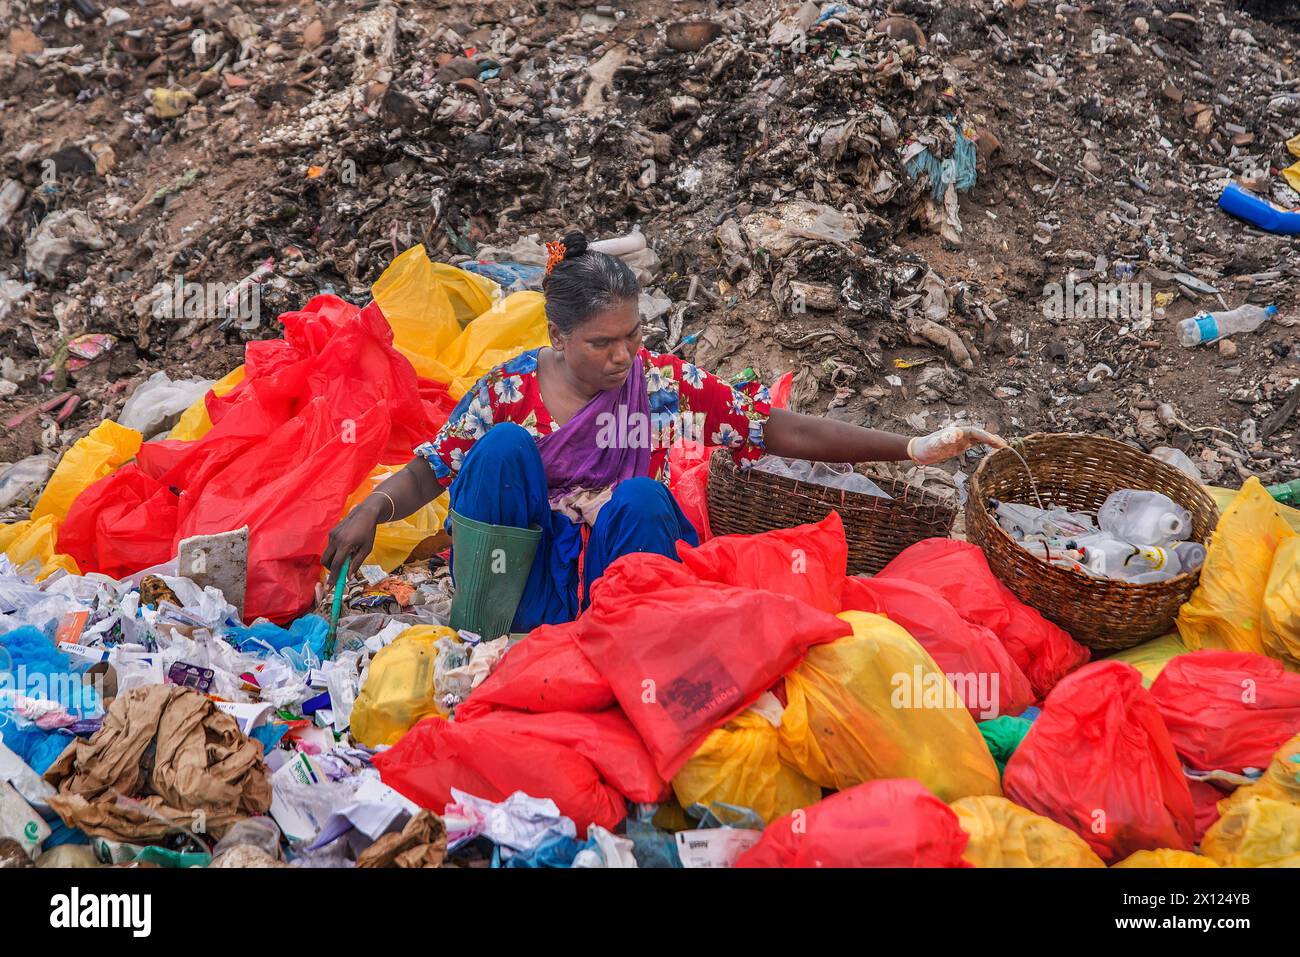 Questa donna sta separando la plastica da una spazzatura. Foto Stock